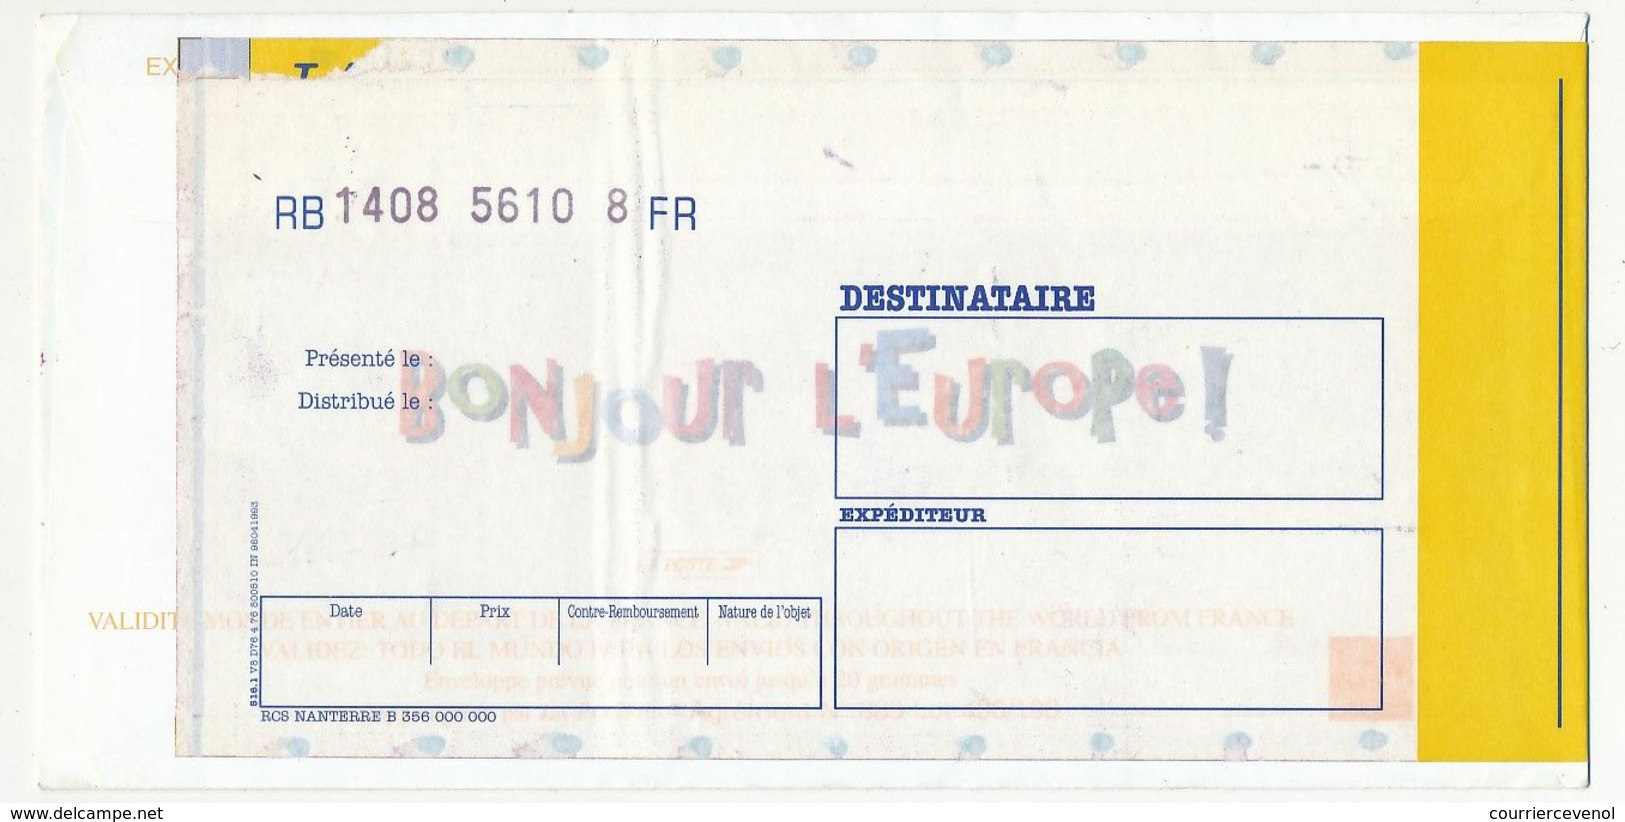 FRANCE => Entier "MERCI" Repiquage "Bonjour L'Europe" - Session Du Parlement 5/10/1999 + Vignette Santé Publique - Buste Ristampe (ante 1955)